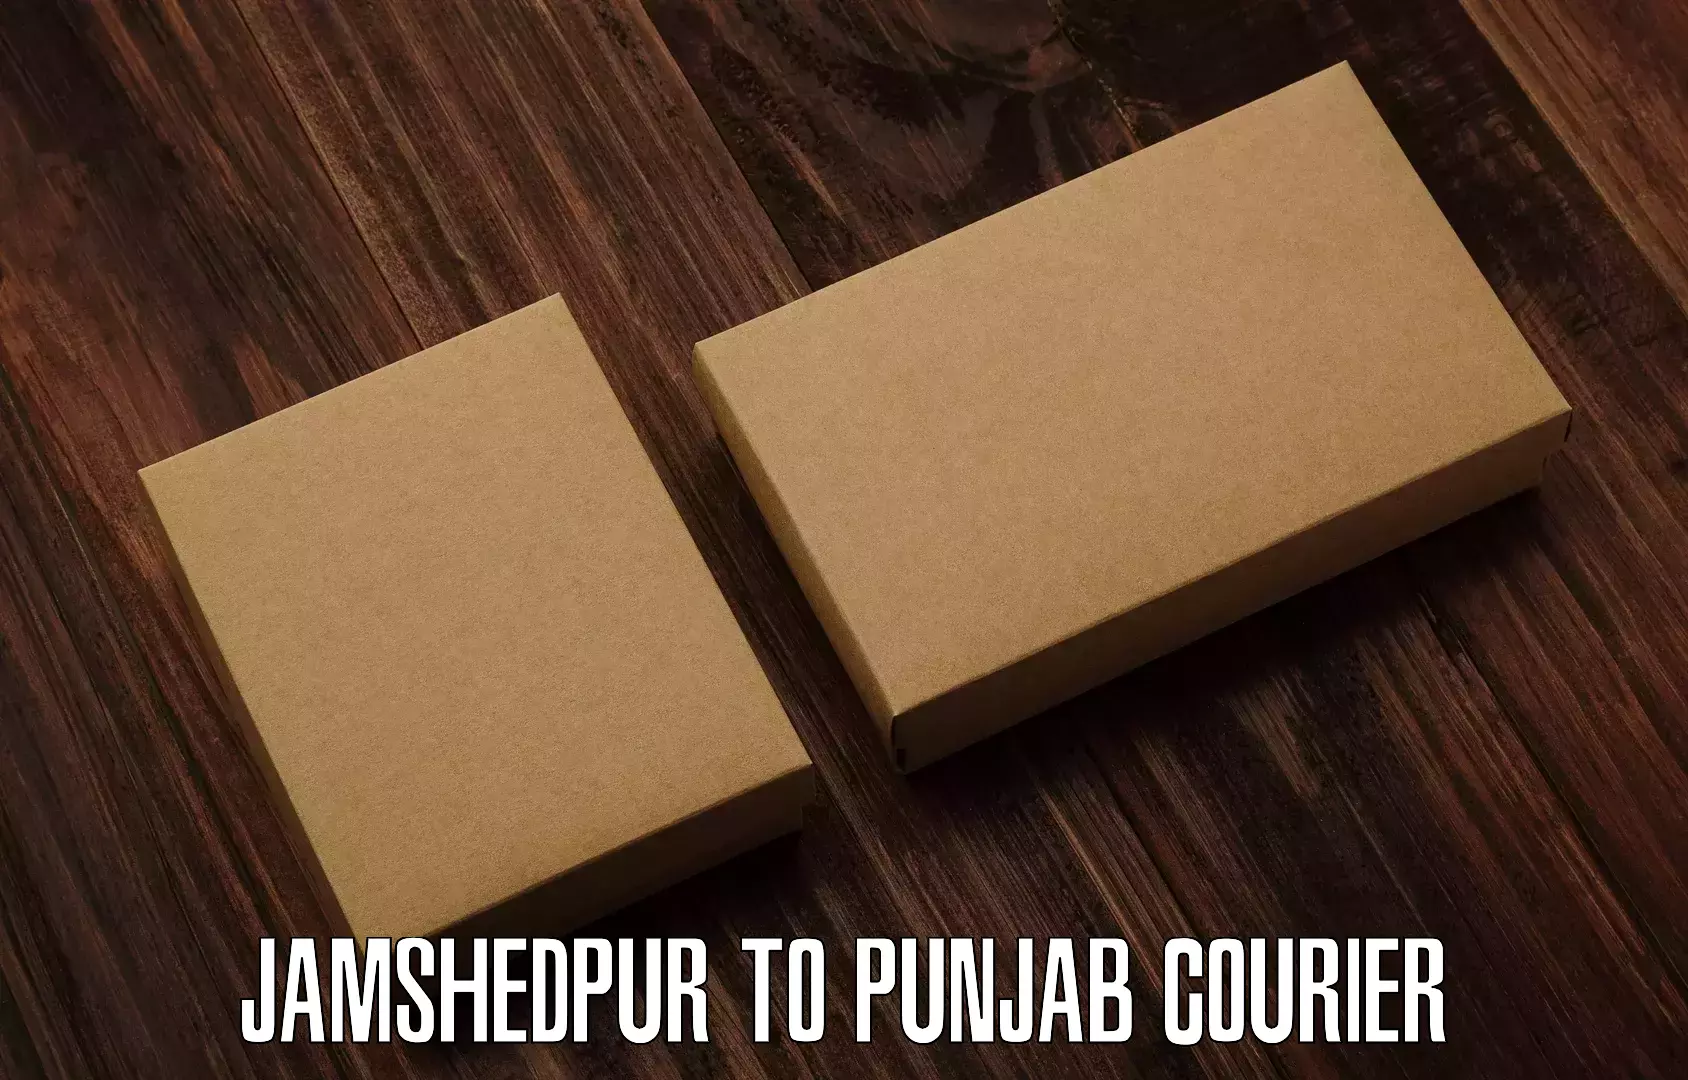 Bulk order courier in Jamshedpur to Dera Bassi